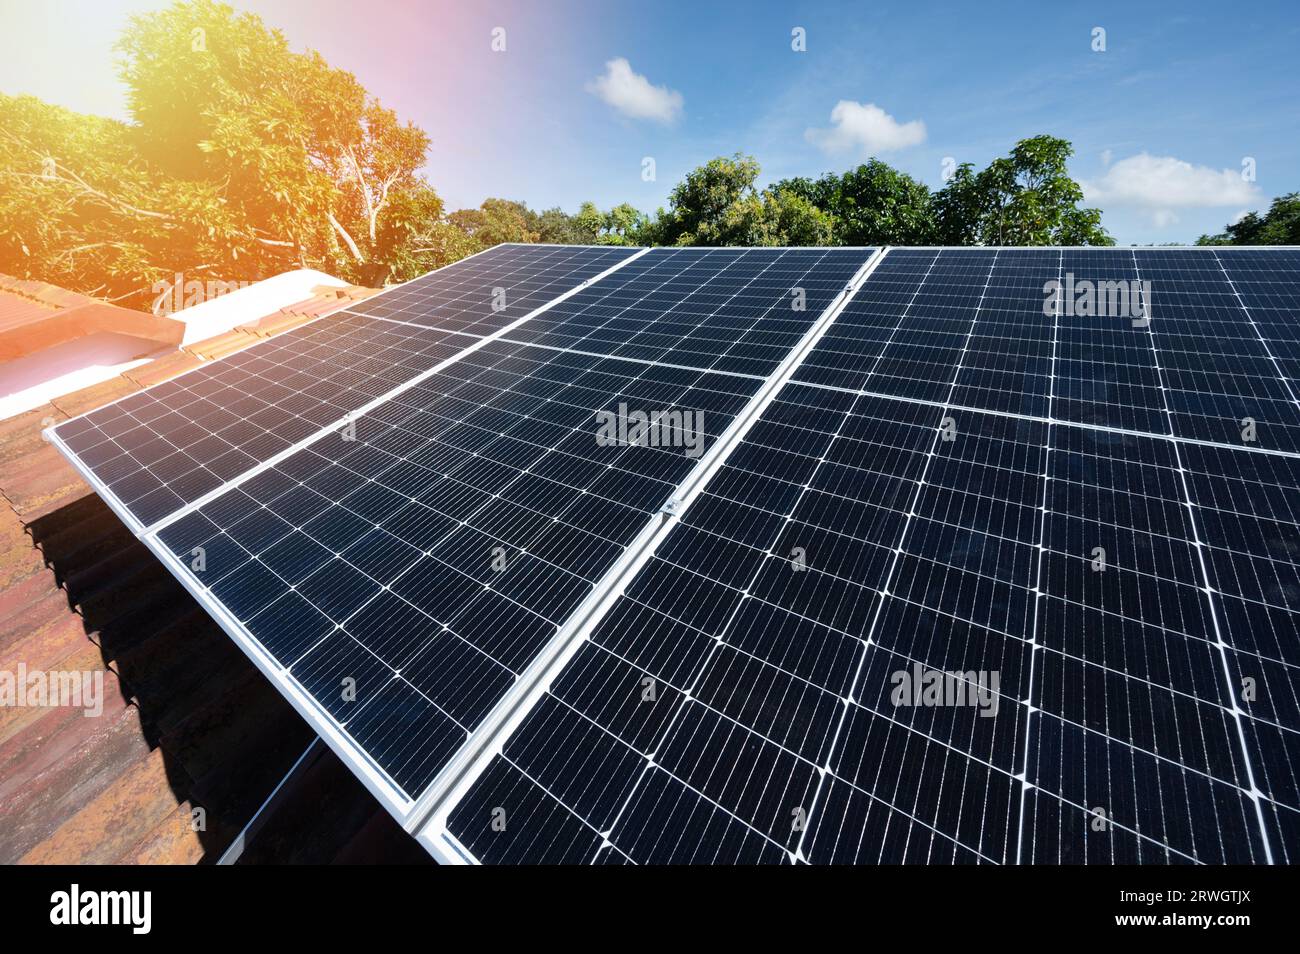 Thème de l'électricité verte. Usine solaire sur le toit de la maison dans le ciel bleu et le fond vert des arbres Banque D'Images